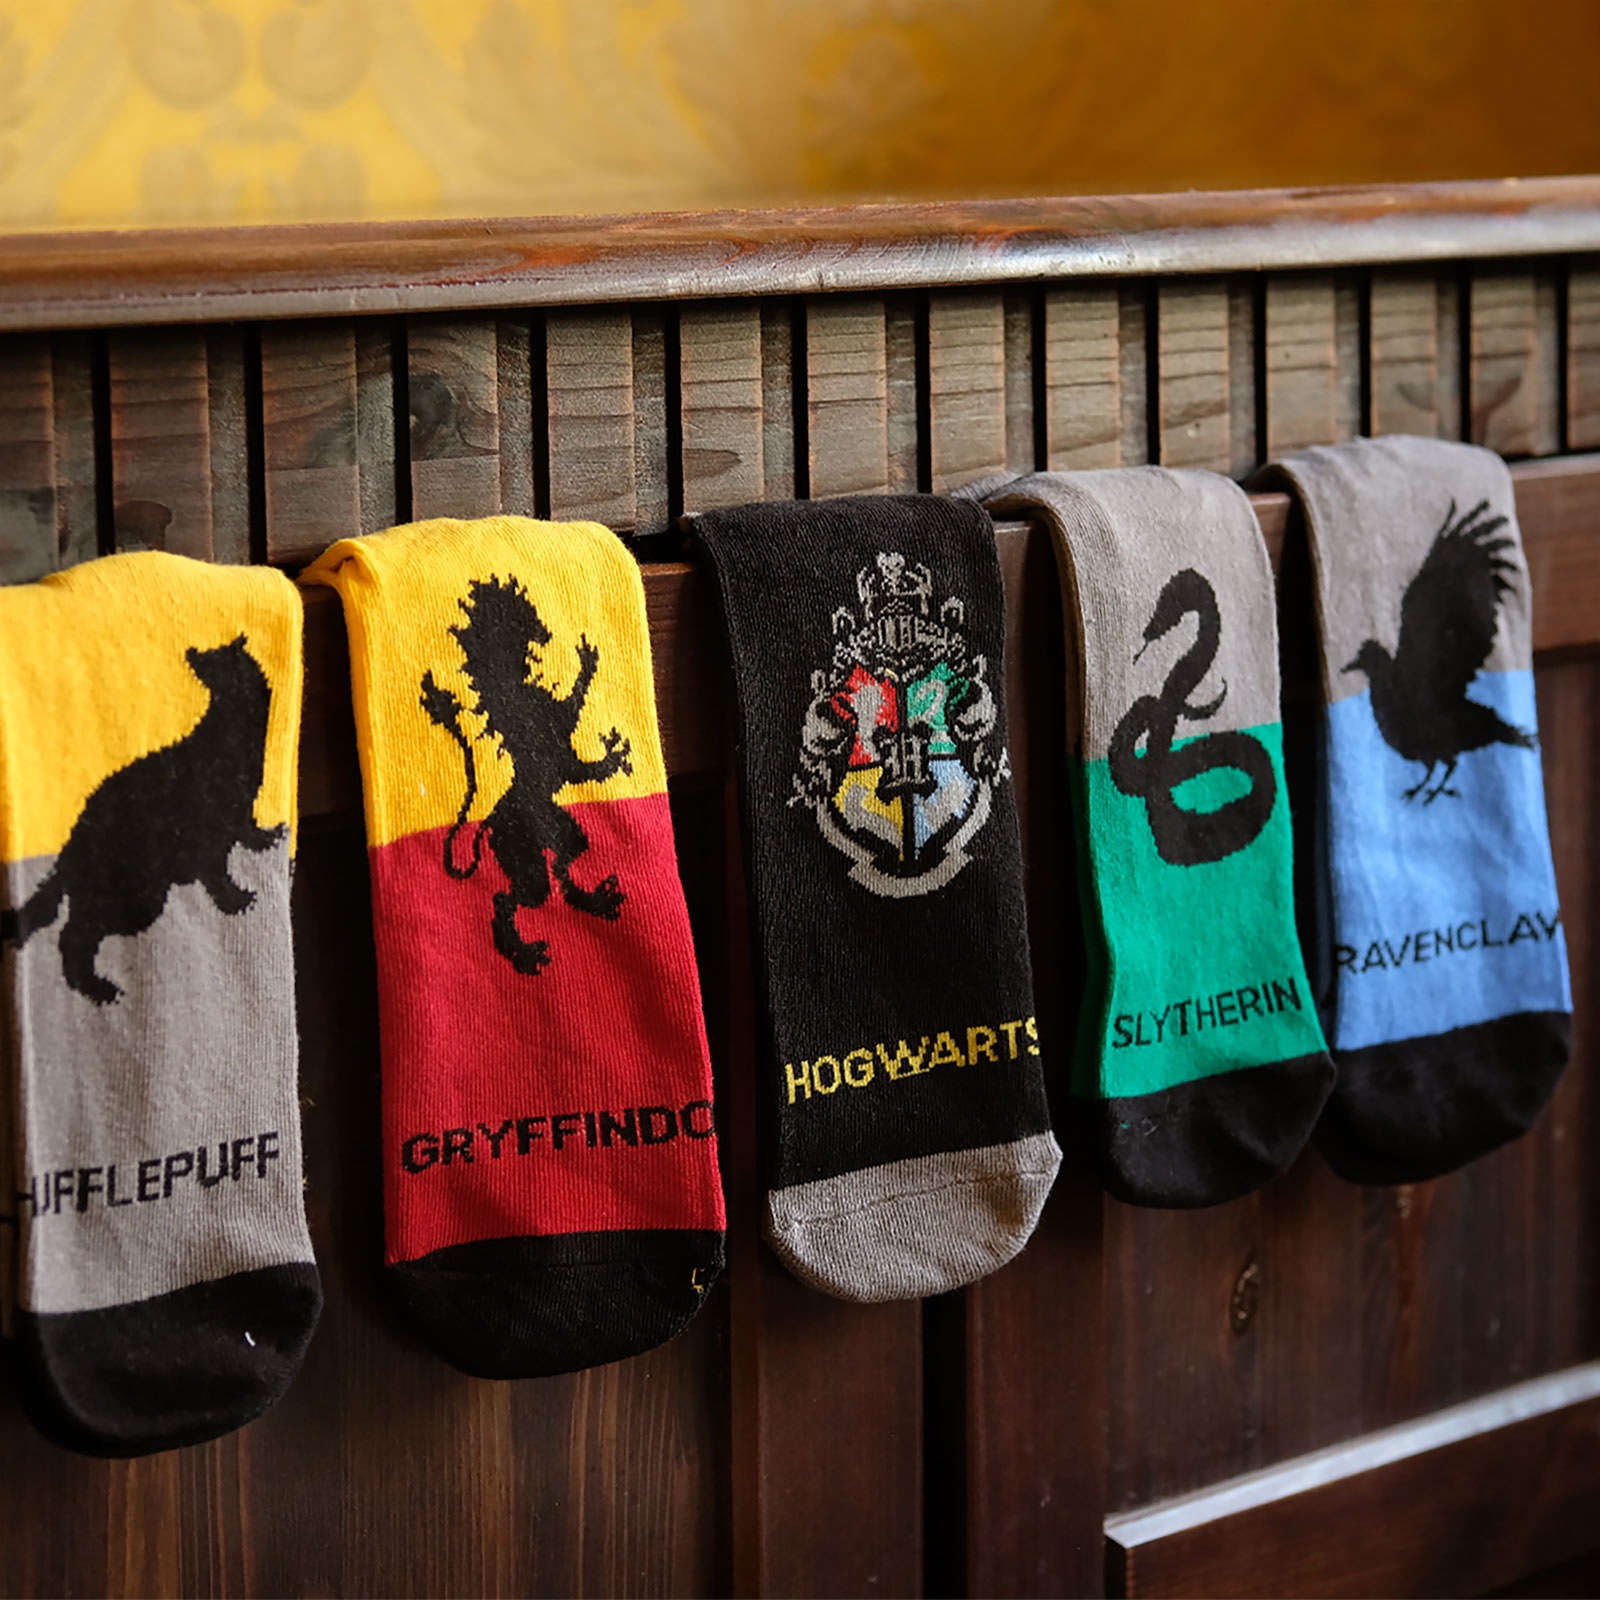 Harry Potter - Hogwarts Sneaker Socken 5er Set